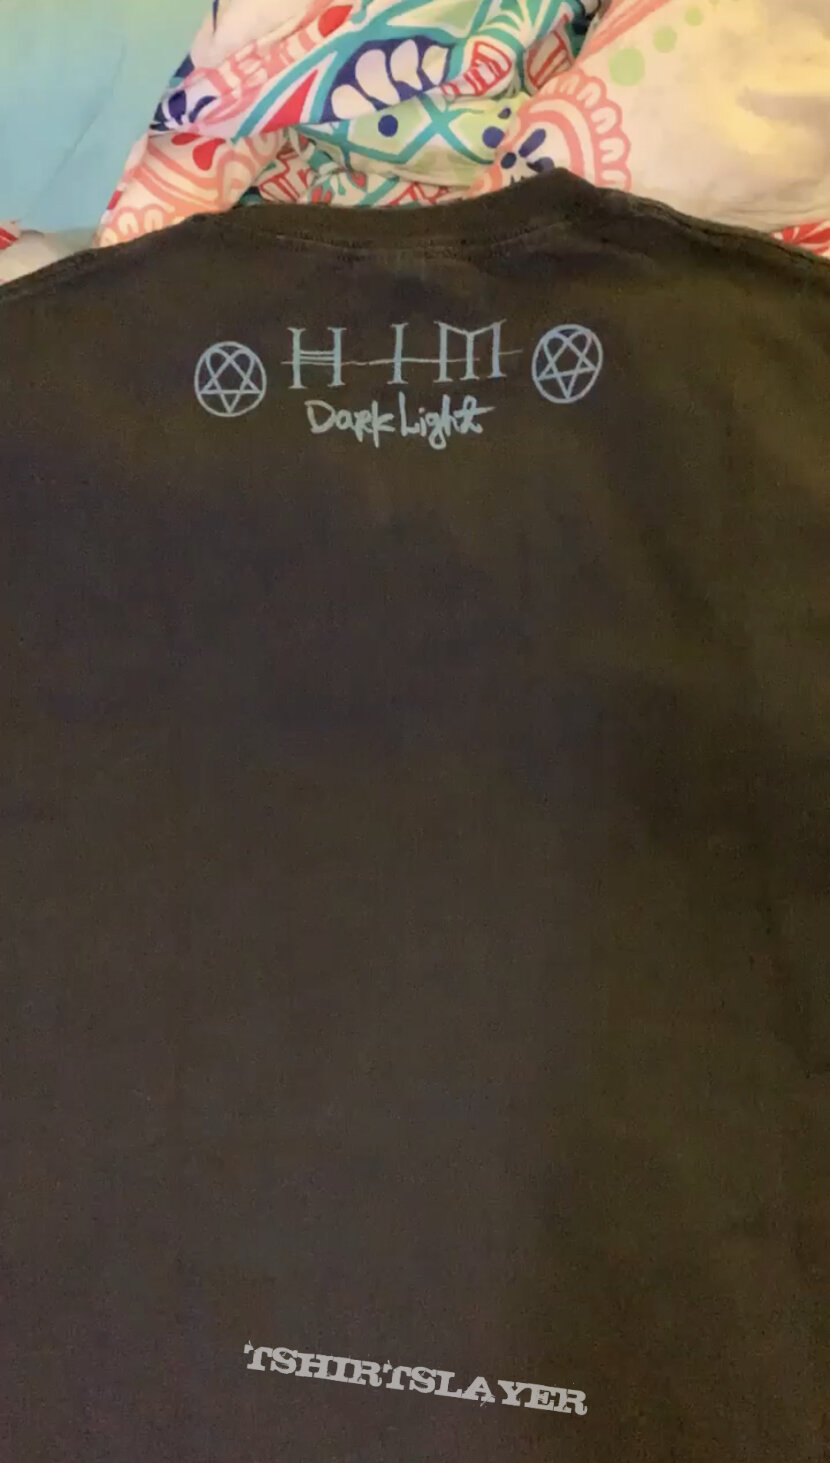 2005 HIM “Darklight” Promo shirt 